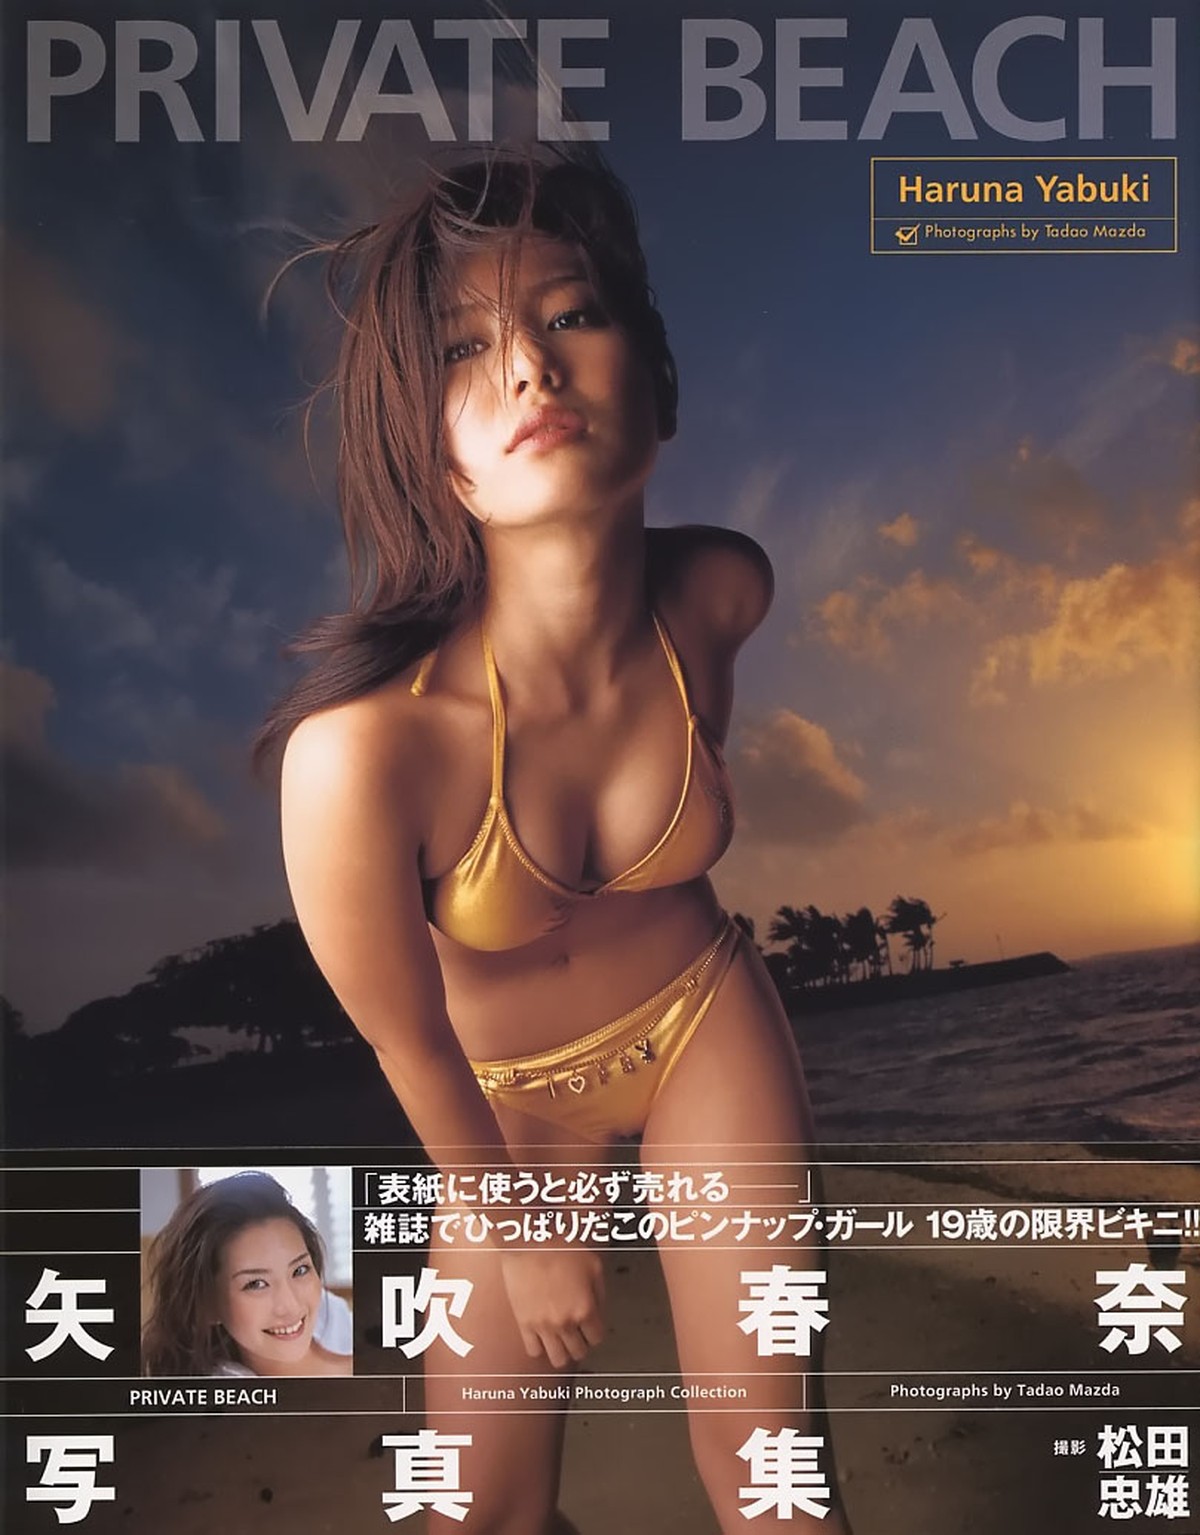 Photobook Haruna Yabuki 矢吹春奈 PRIVATE BEACH 0001 3554140028.jpg